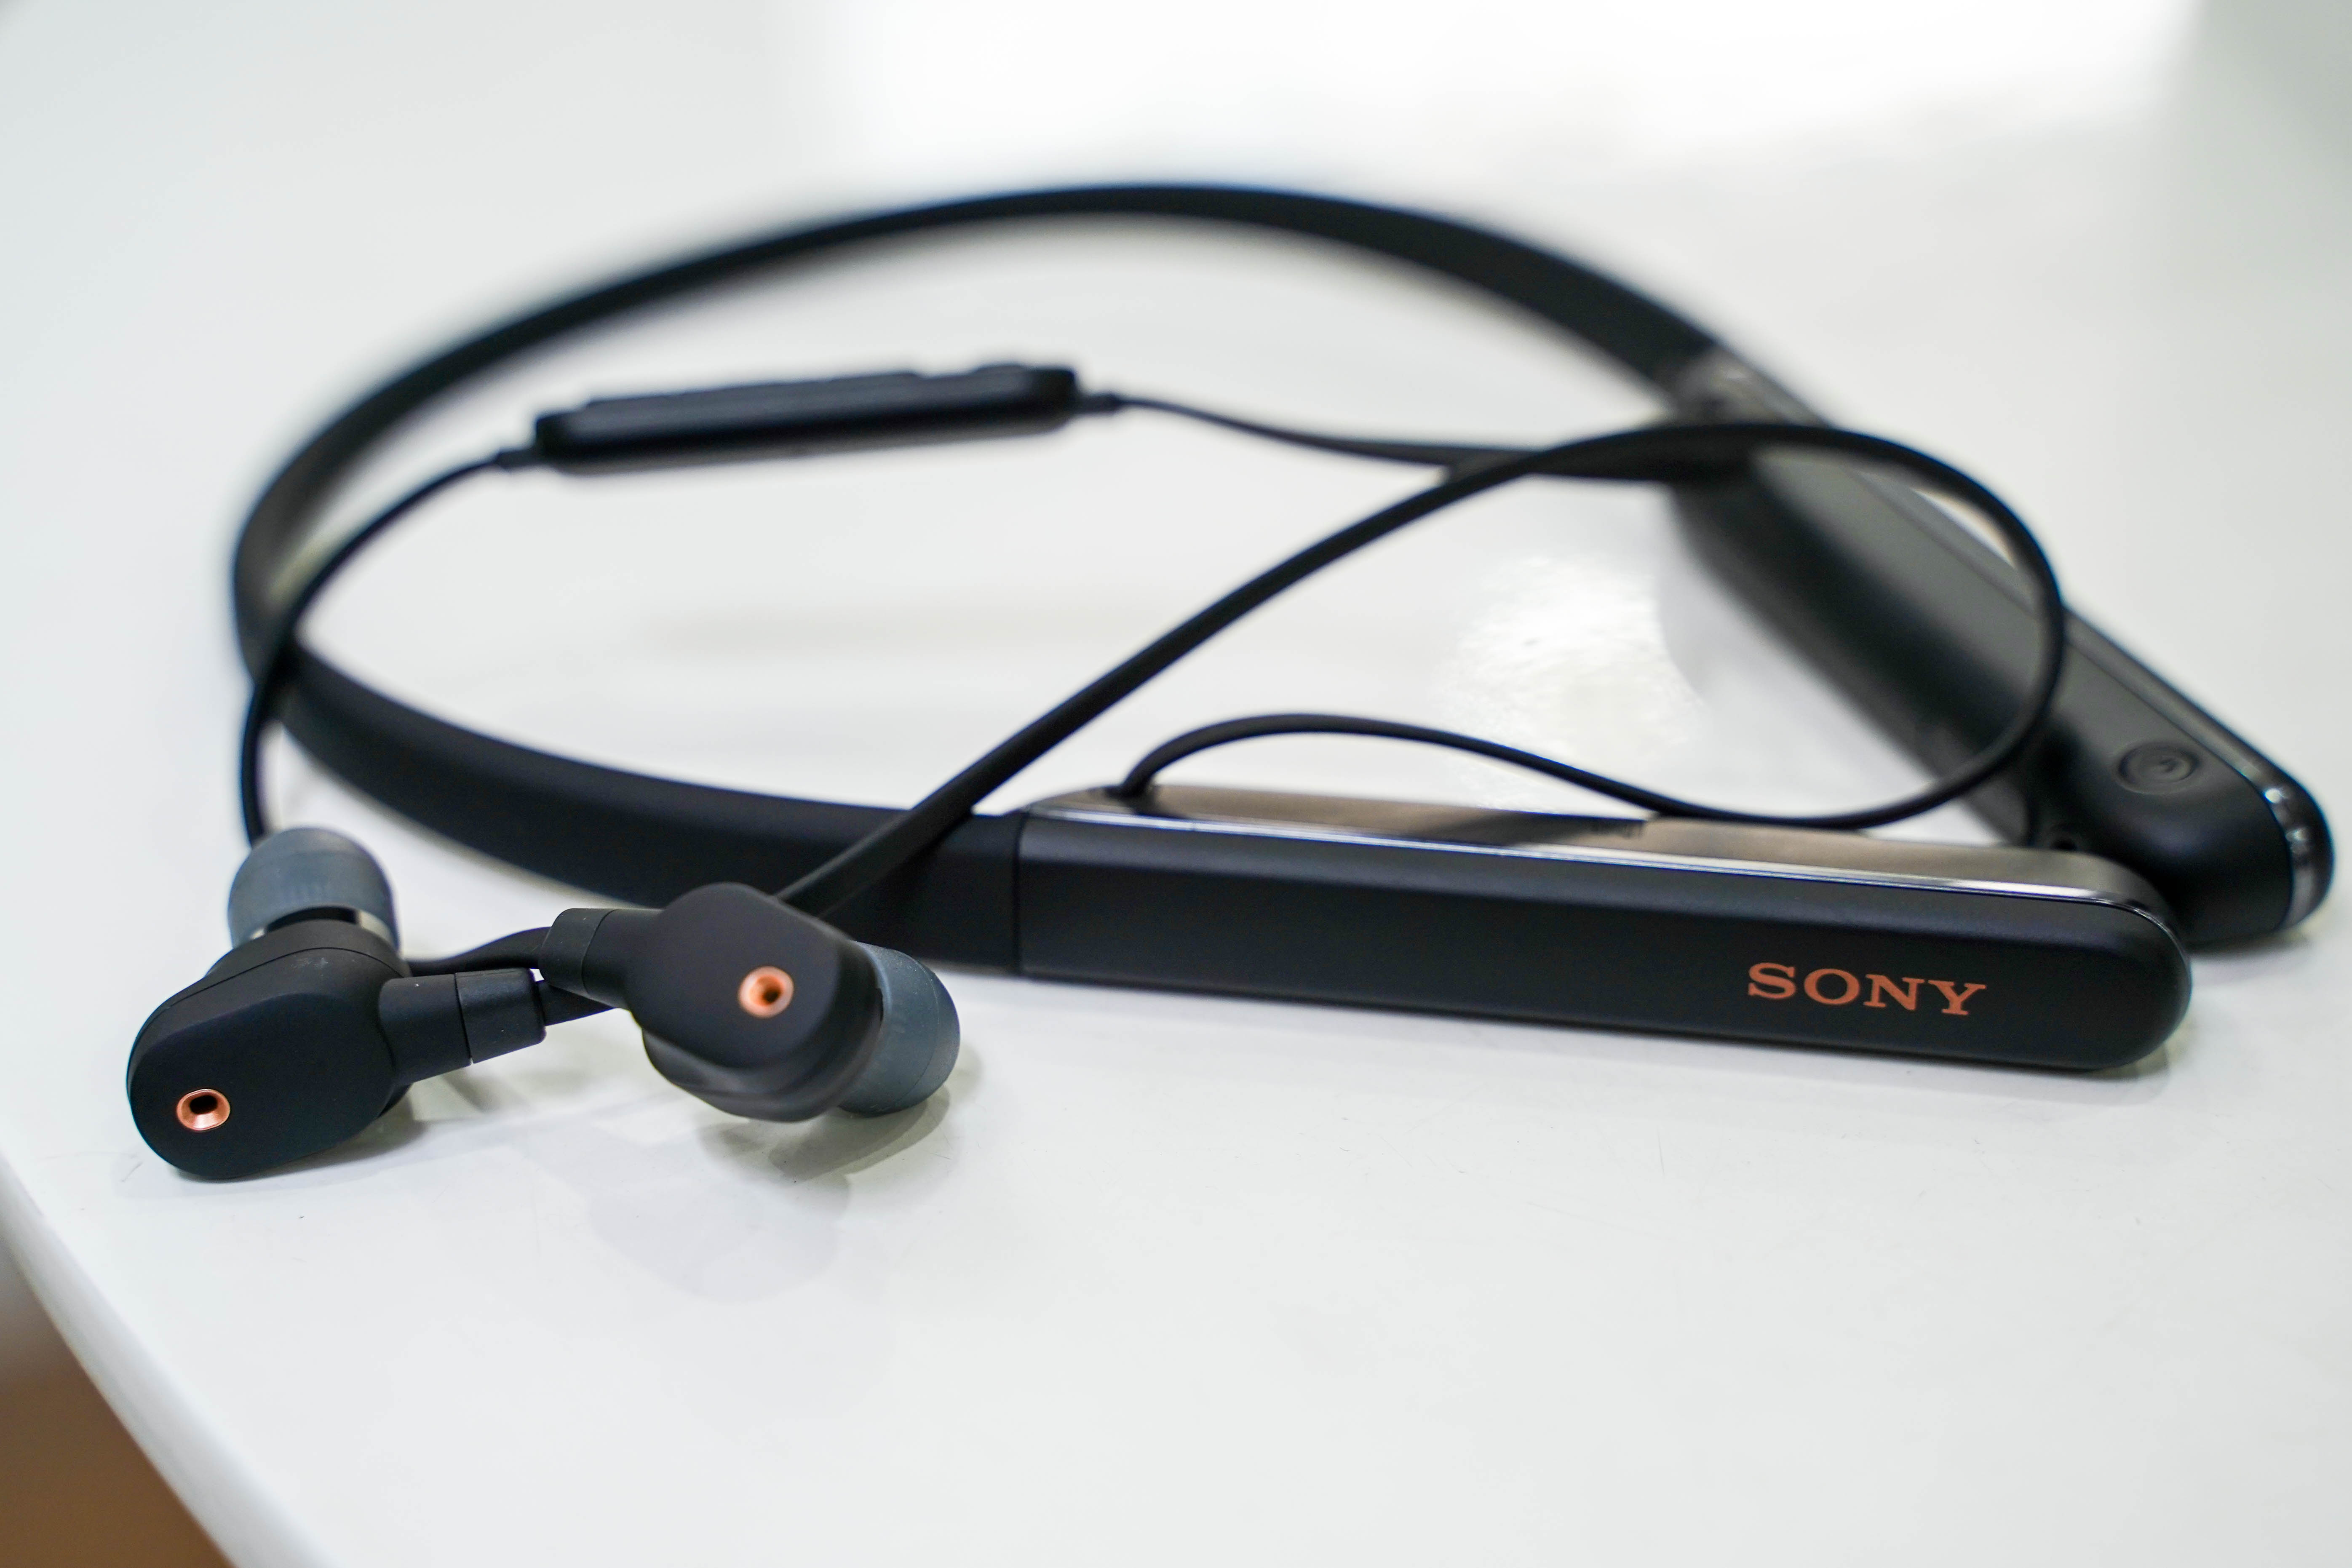 SONY Wireless Noise Canceling Earphone WI-1000XM2 black | Lazada